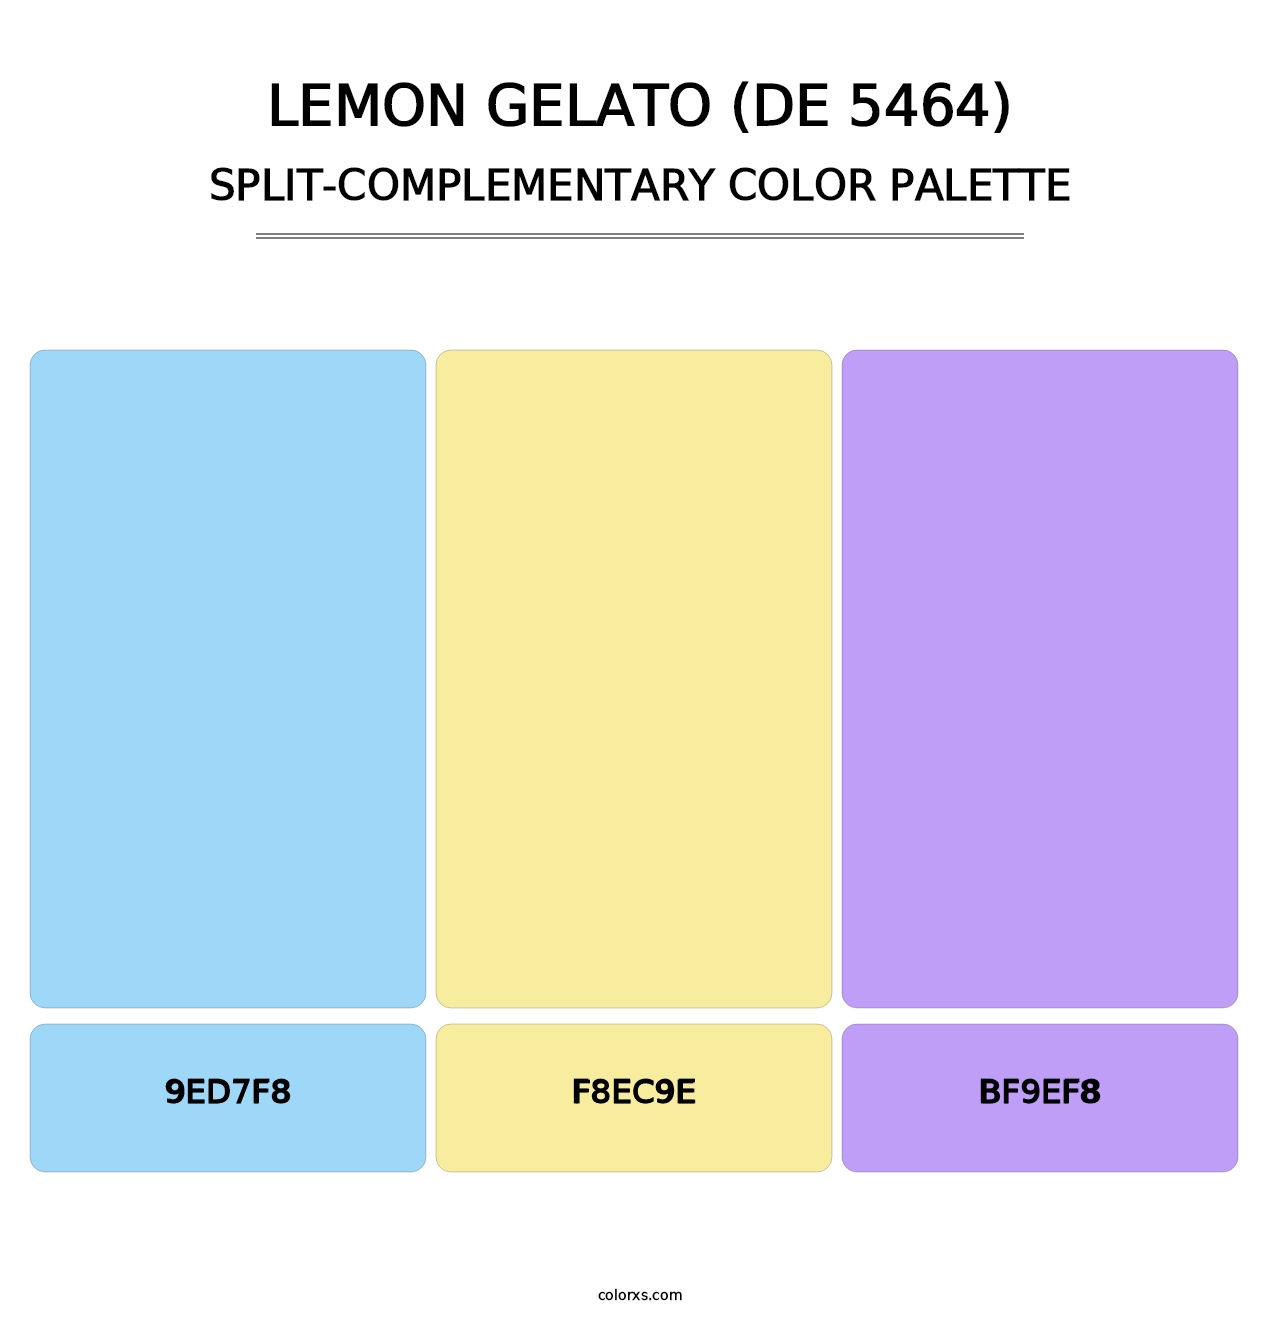 Lemon Gelato (DE 5464) - Split-Complementary Color Palette